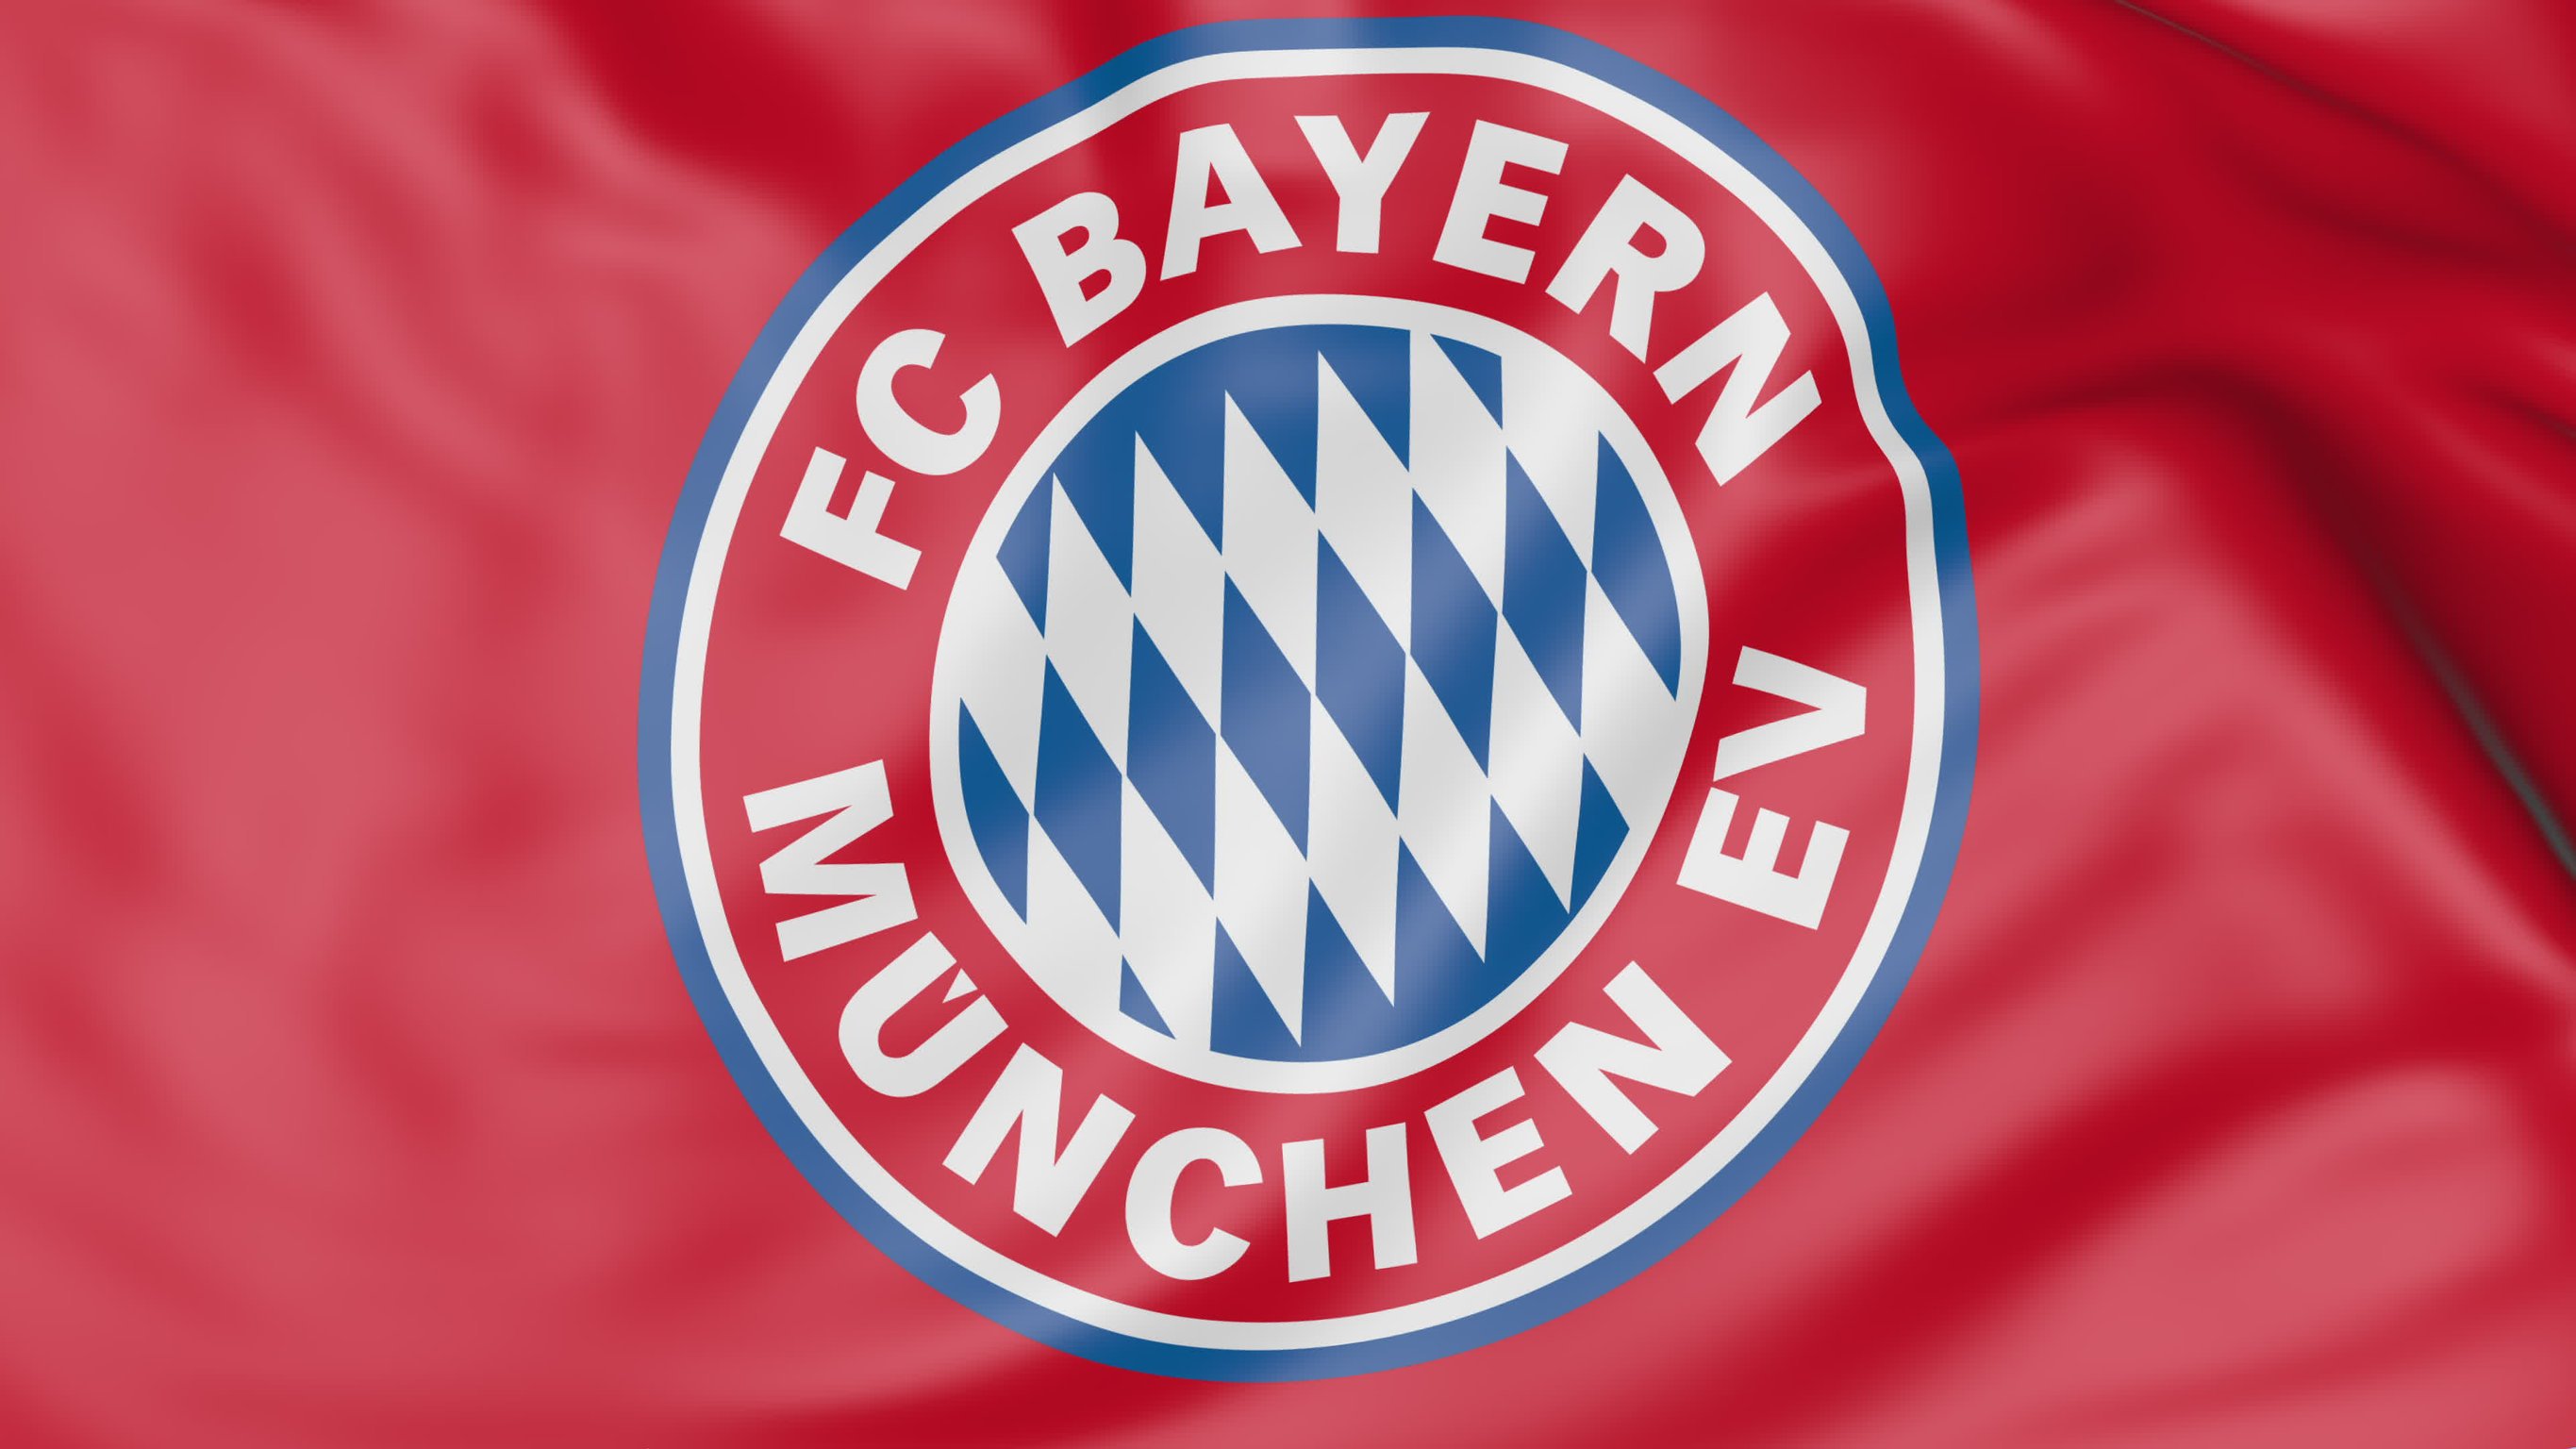 Bandeira do Bayern Munchen.